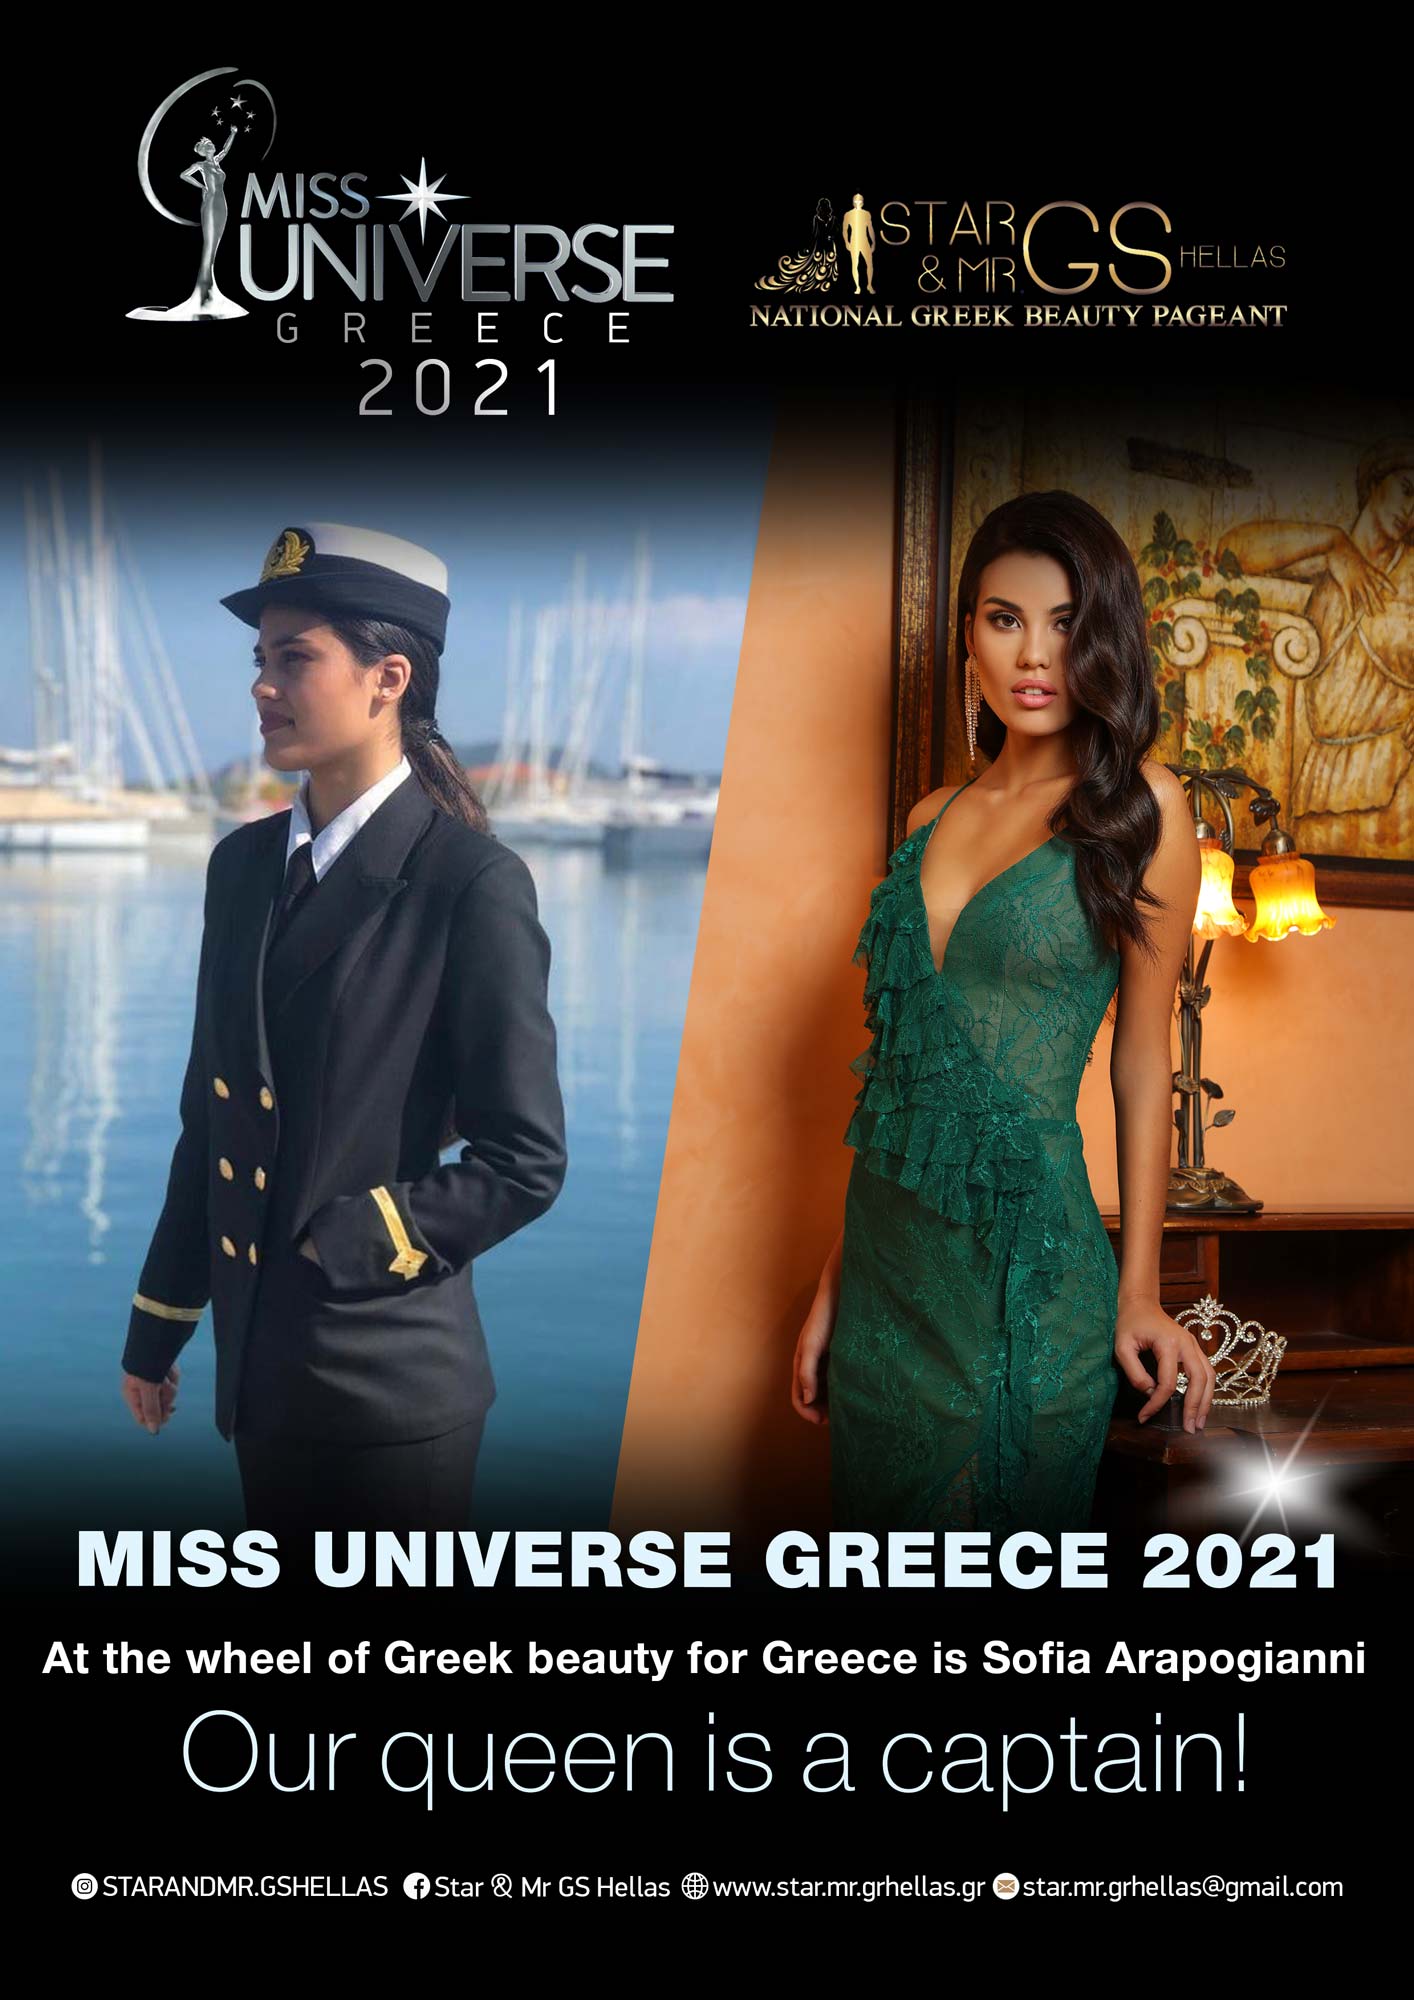 Με τις ευχές του Υφυπουργού Ναυτιλίας η Miss Universe Greece 2021, Σοφία Αραπογιάννη στο Μις Υφήλιος 2021